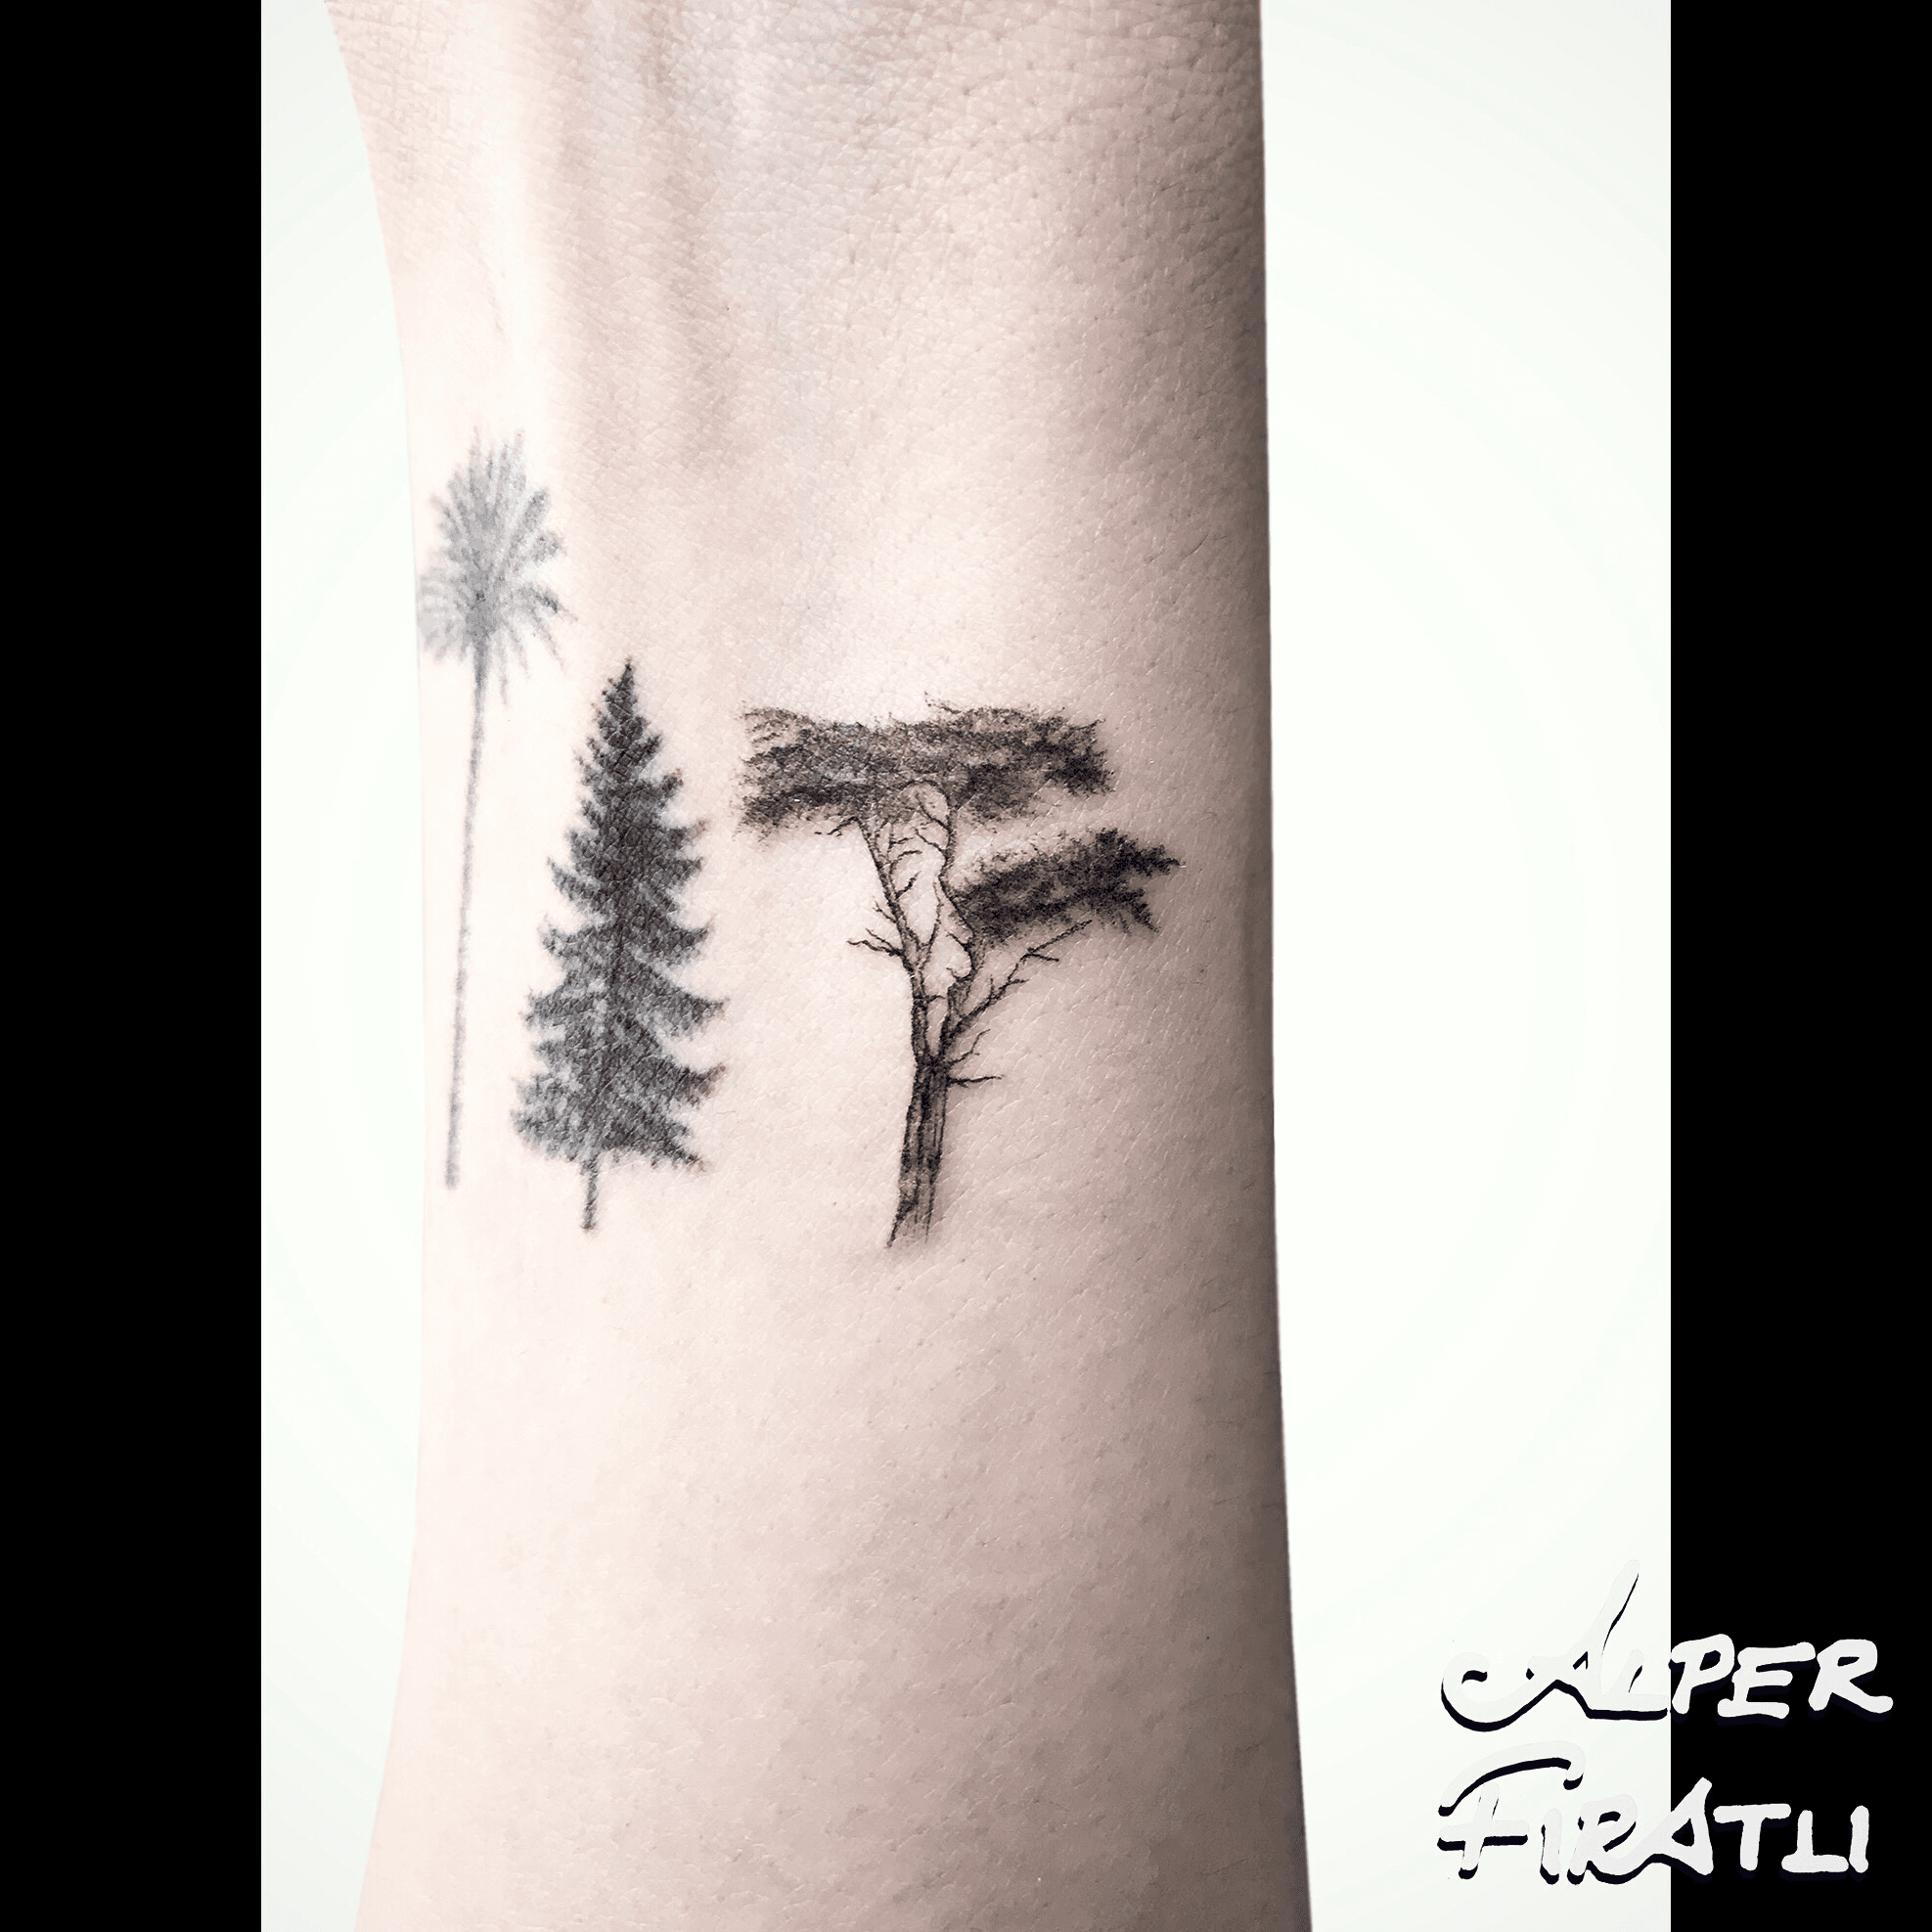 Tattoo uploaded by Alper FIRATLI • Lone cypress is no longer alone Palm & pine are healed . #pine #lonecypress #palmtrees #pinetreetattoo #minimal # tattoo #linework #tattooartist #tattooidea #art #tattooart #ink #inked #customtattoo #